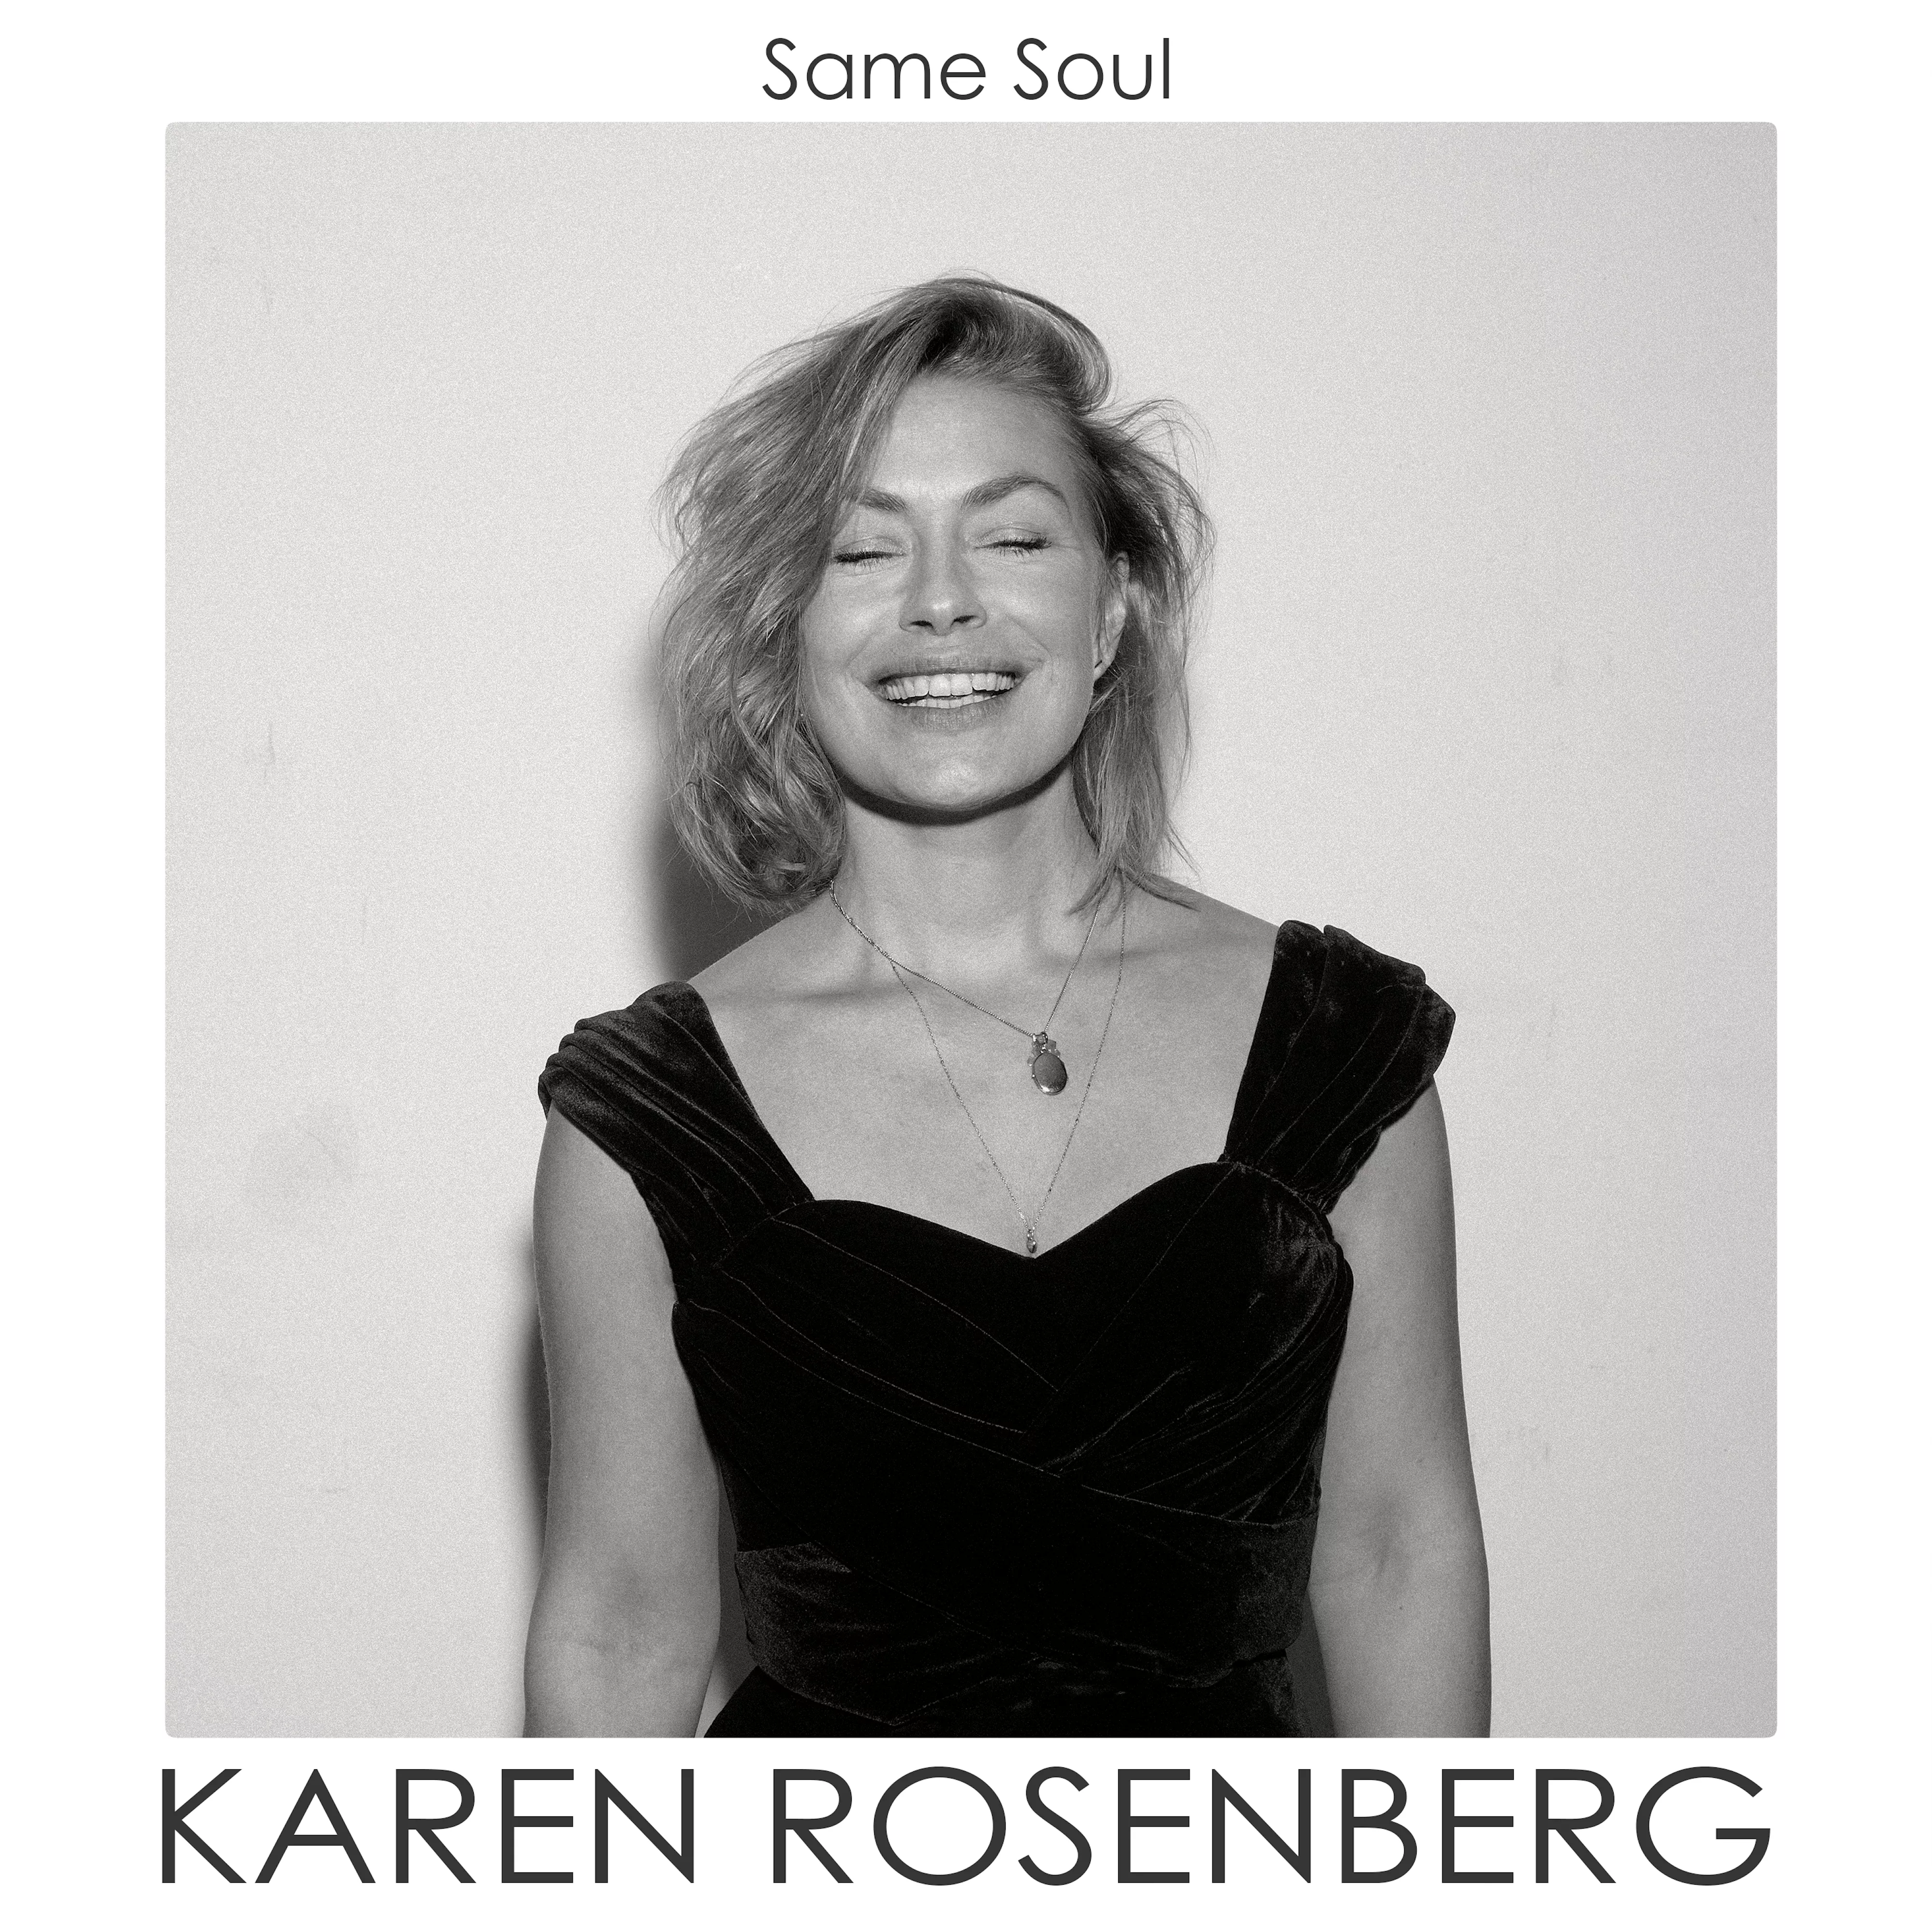 ANMELDELSE: Raffineret vokaljazz fra r&b-sangerinden Karen